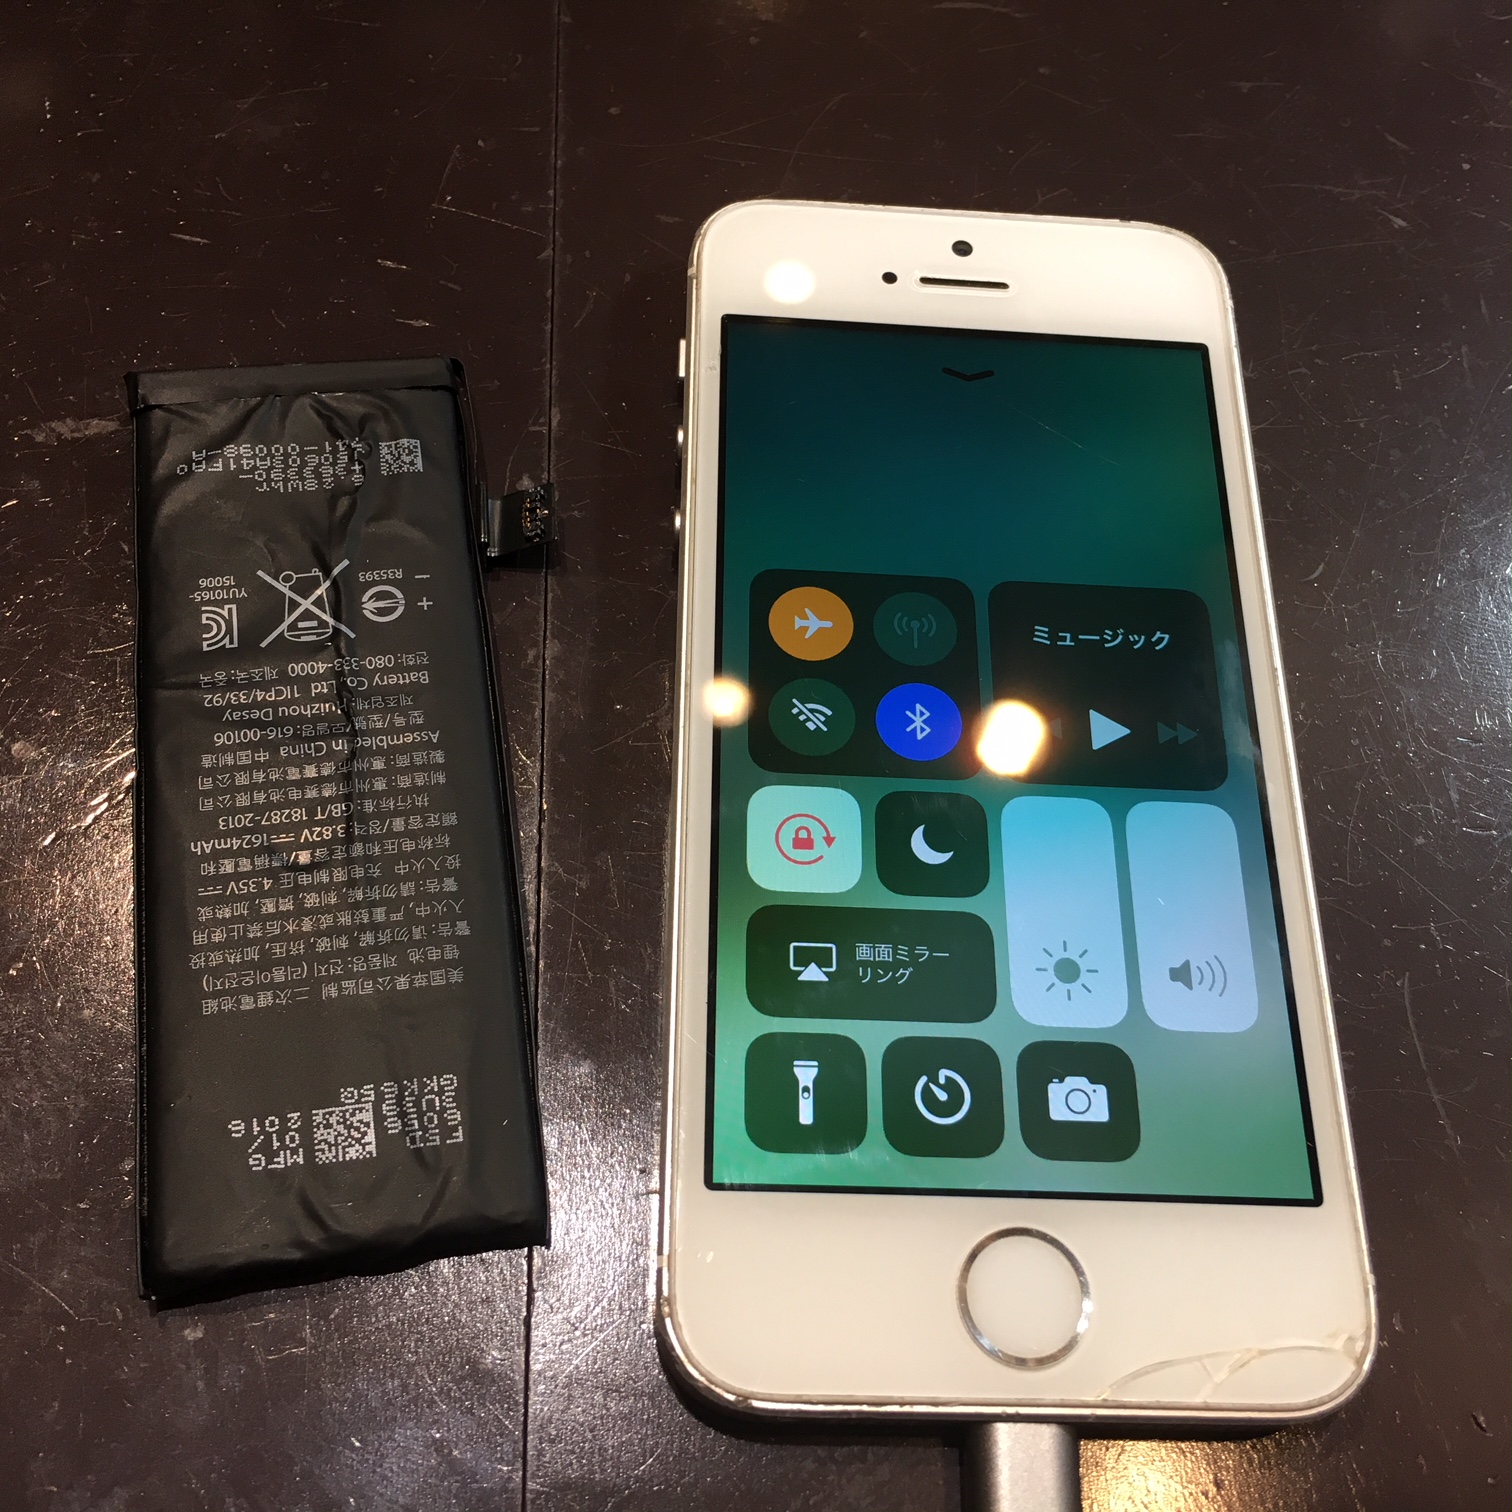 iPhone6のバッテリーが充電できなくなった？→きっとそれはバッテリーが古いから！交換したらスッキリ使えるようになりますよ。ぜひスマートクールへ！☎06-6421-1705